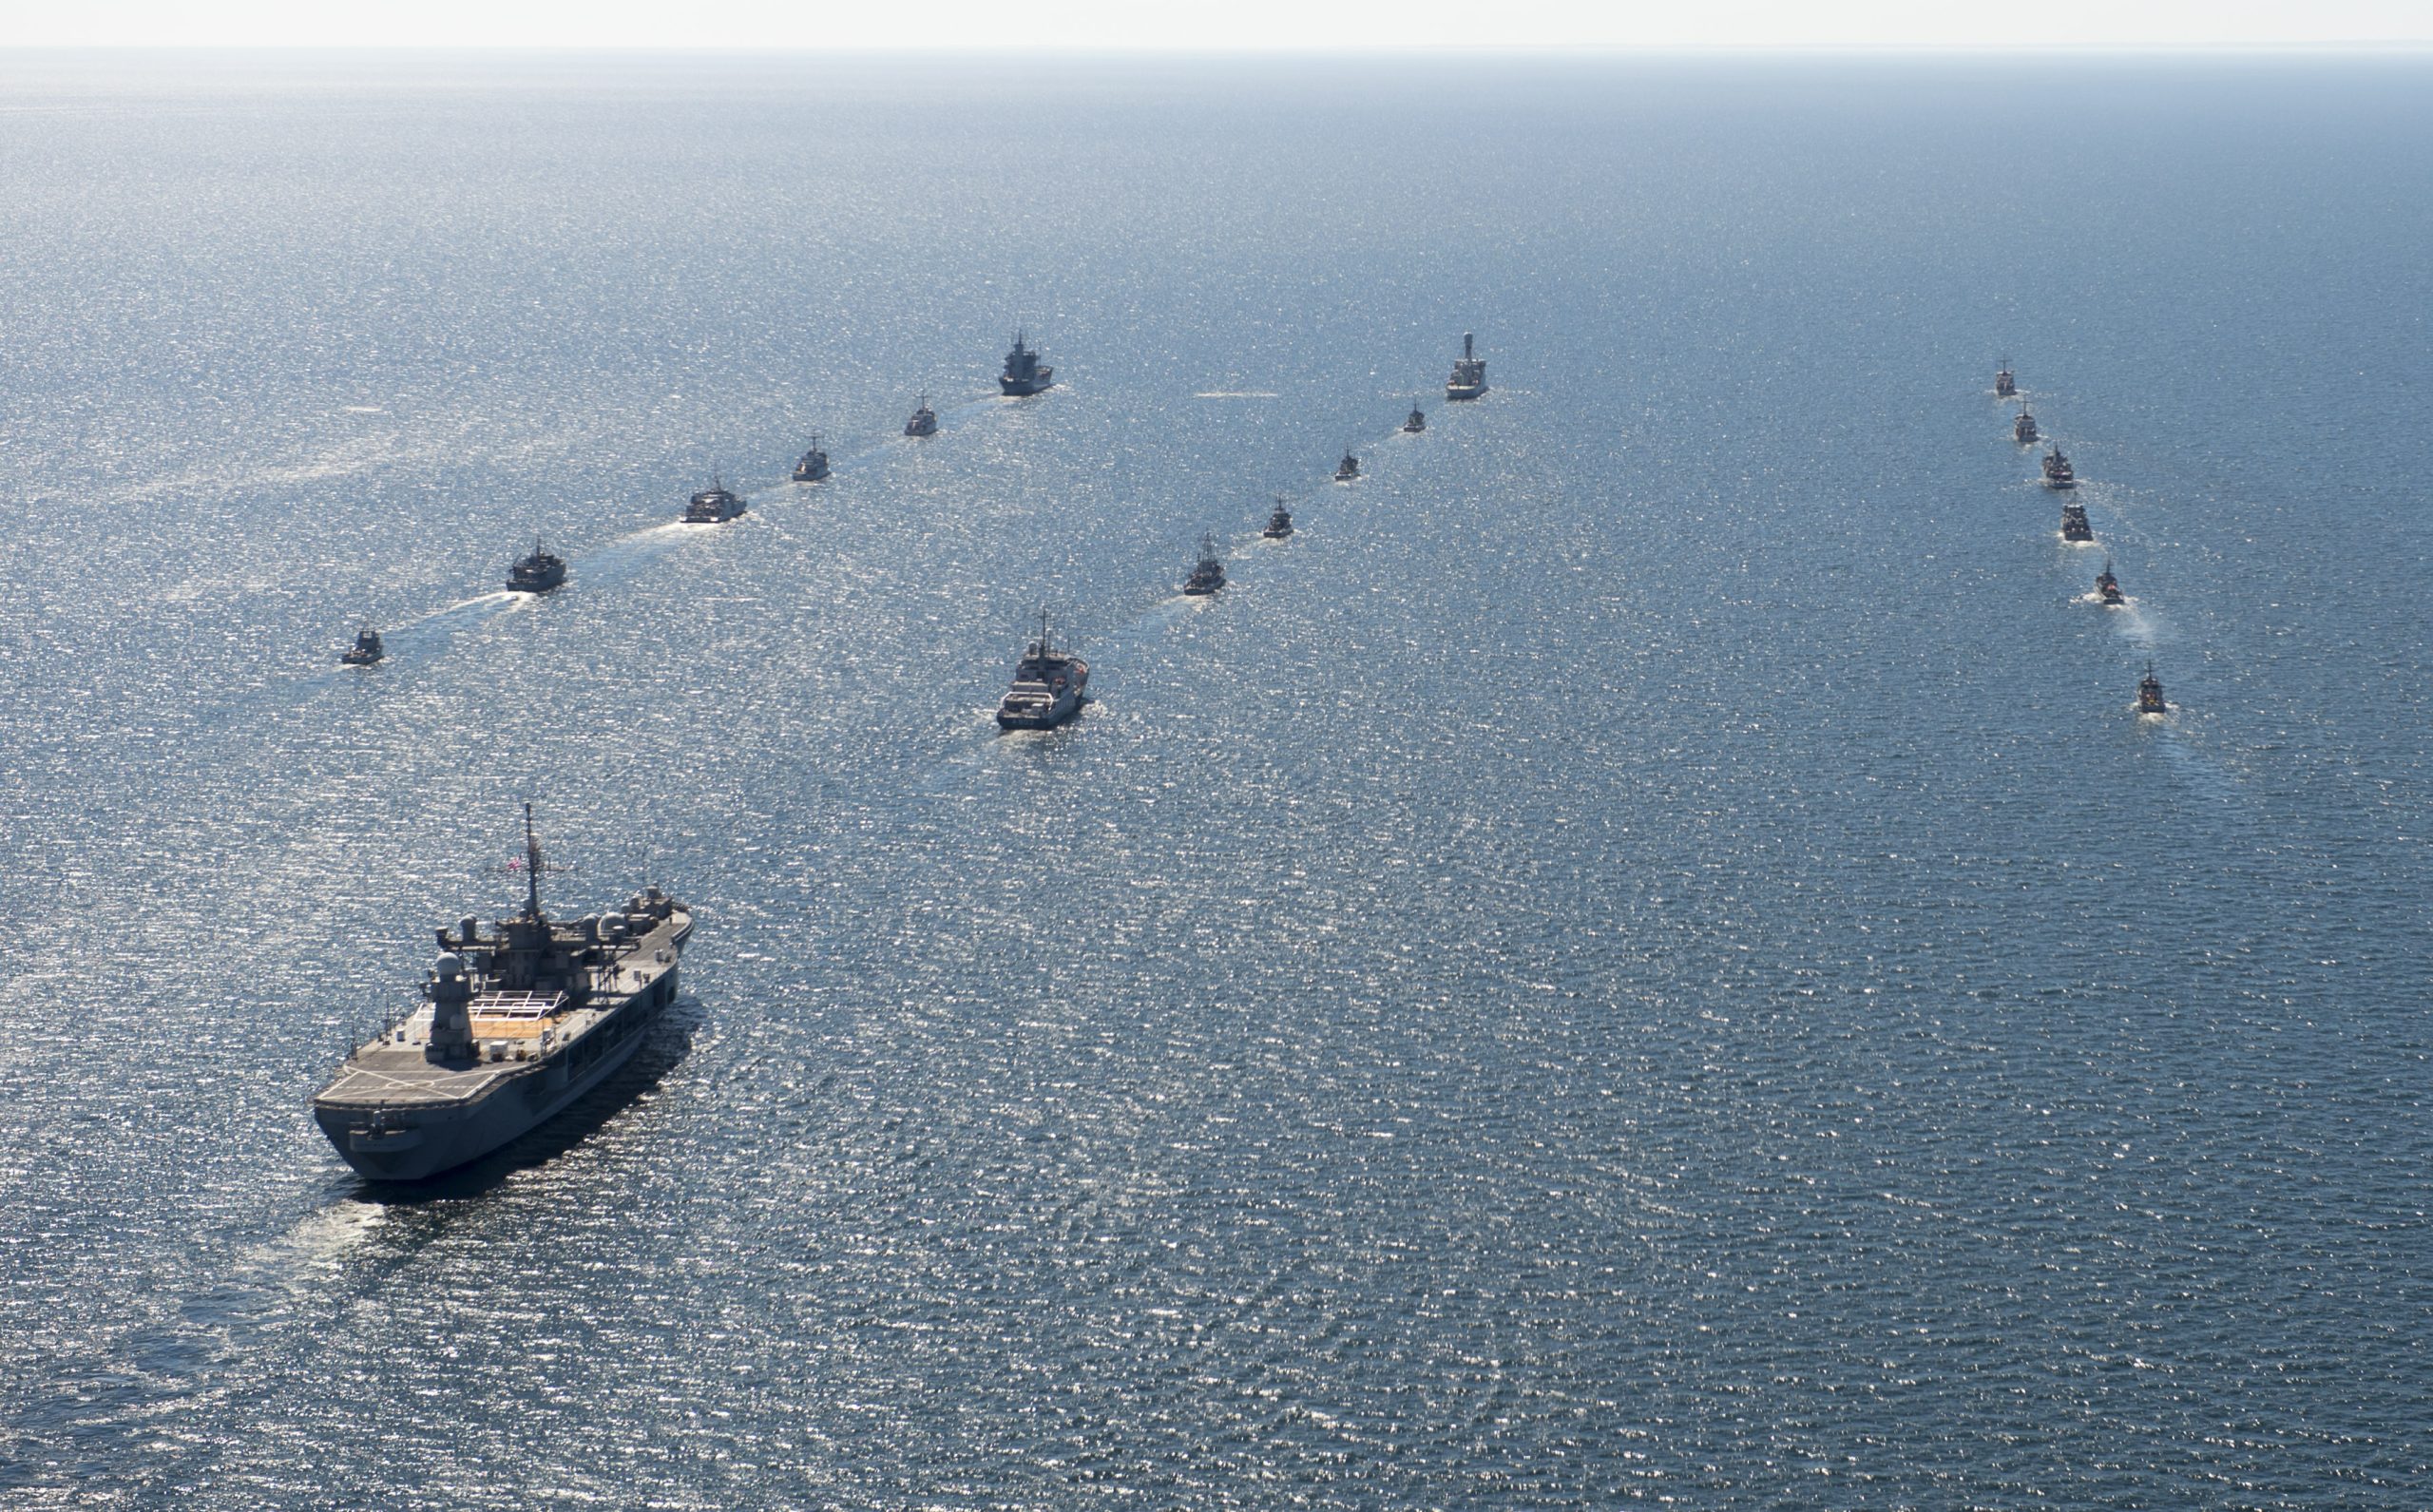 Οι ΗΠΑ στέλνουν τον 6ο Στόλο στην κυπριακή ΑΟΖ: Απάντηση στην Άγκυρα που απειλεί τις γεωτρήσεις της Εxxon Mobil